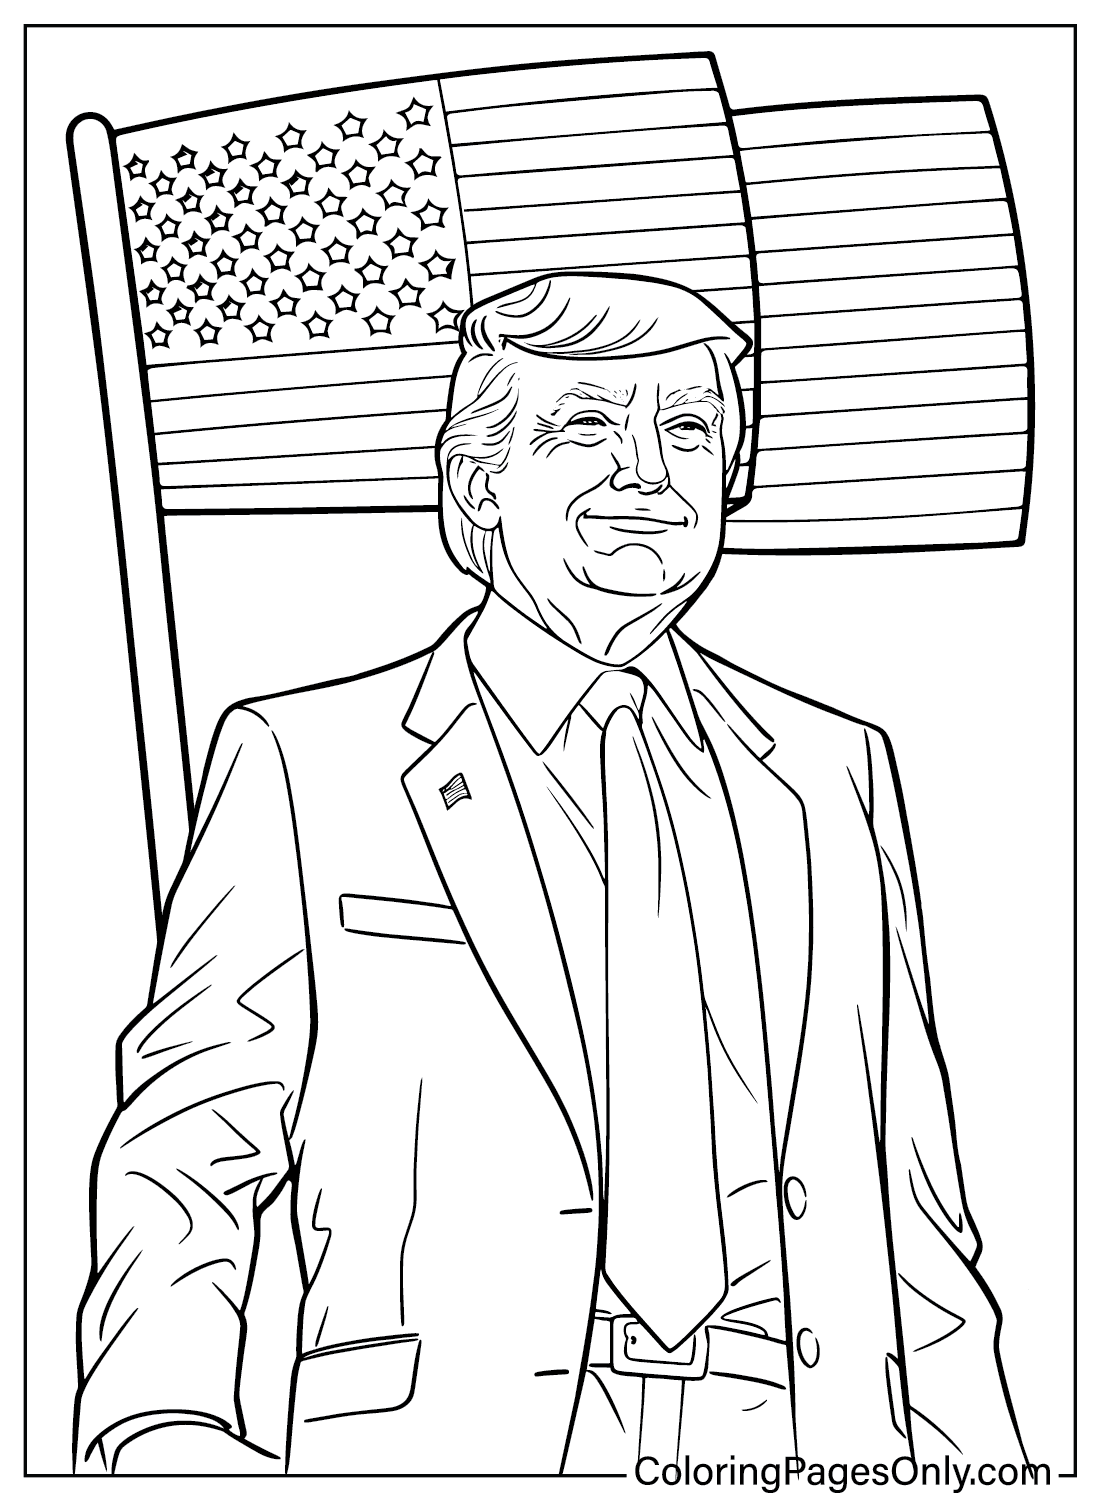 Donald Trump kleurplaat voor kinderen van Donald Trump